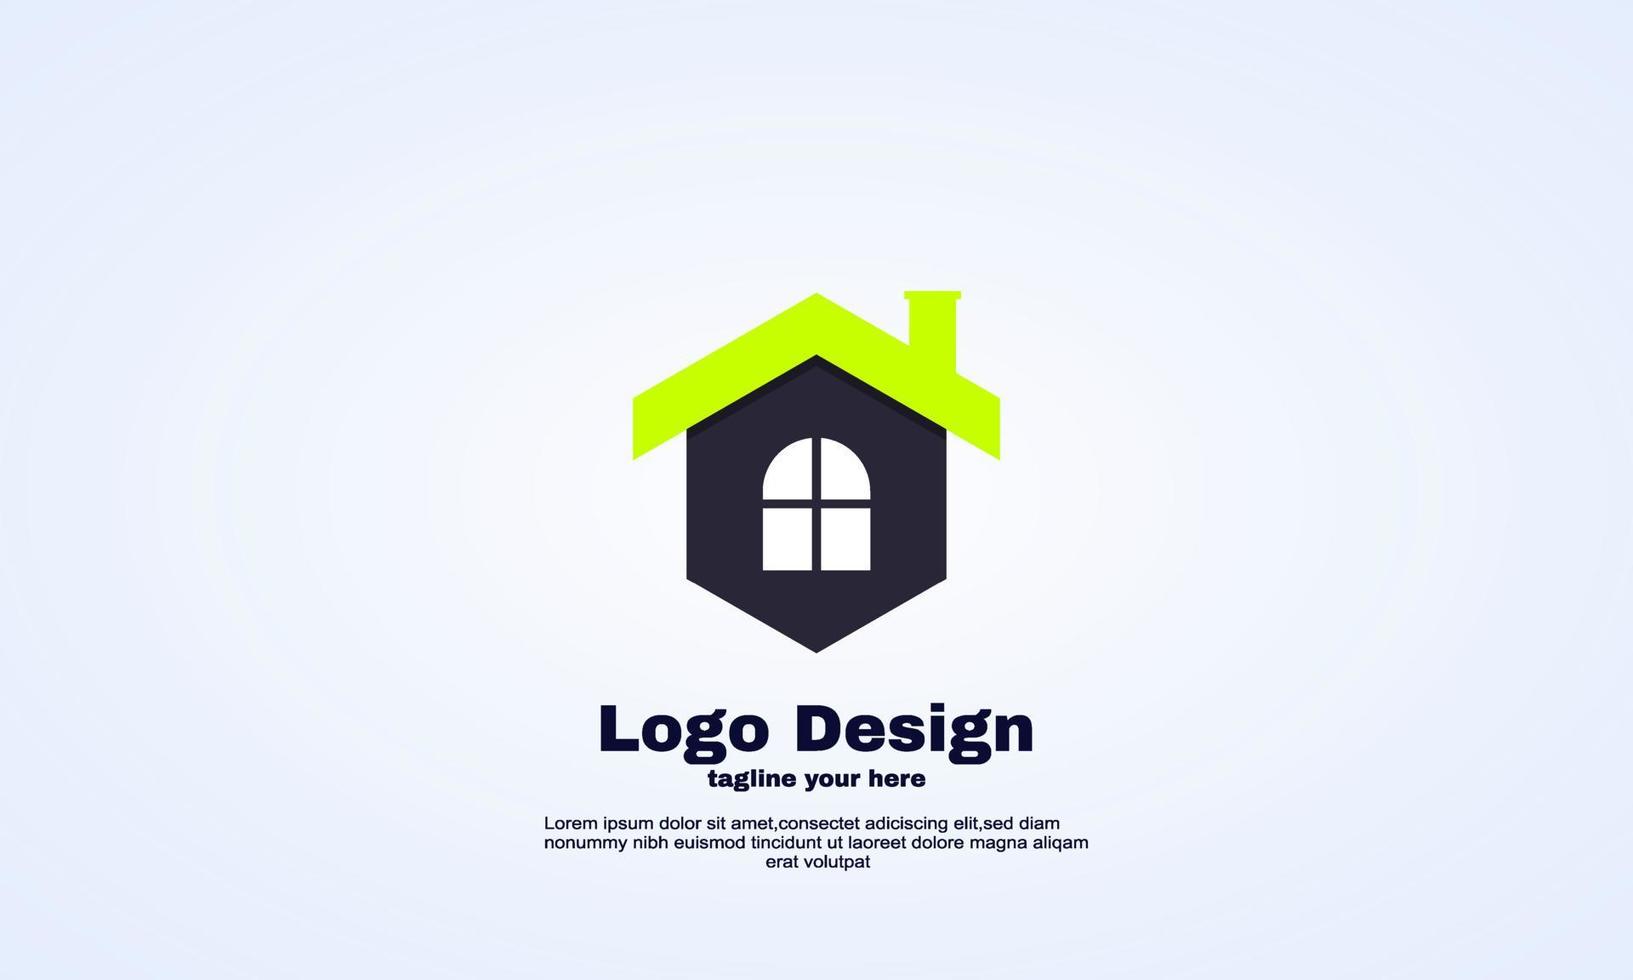 segno di icona semplice logo astratto casa moderna vettore